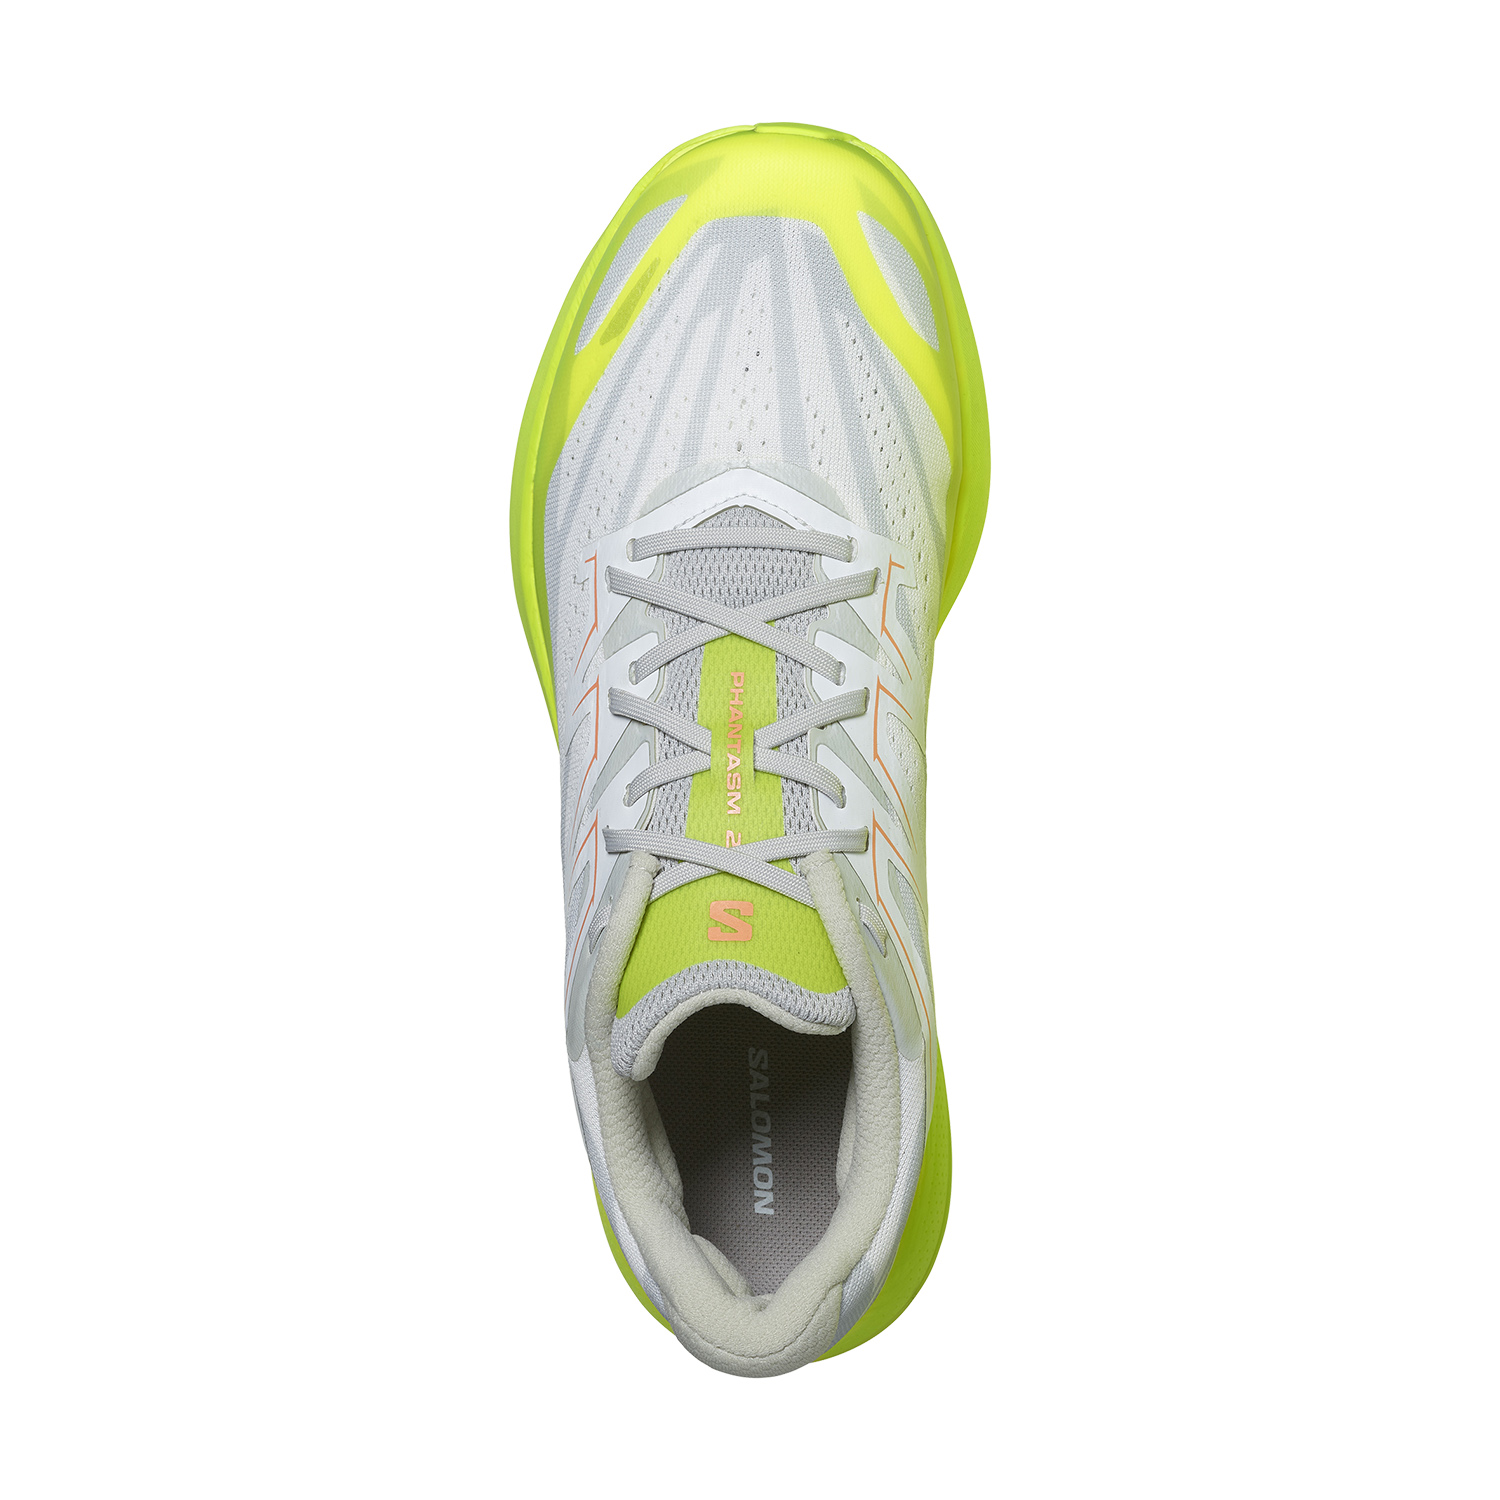 Salomon Phantasm 2 Men's Running Shoes - White/Safety Yellow